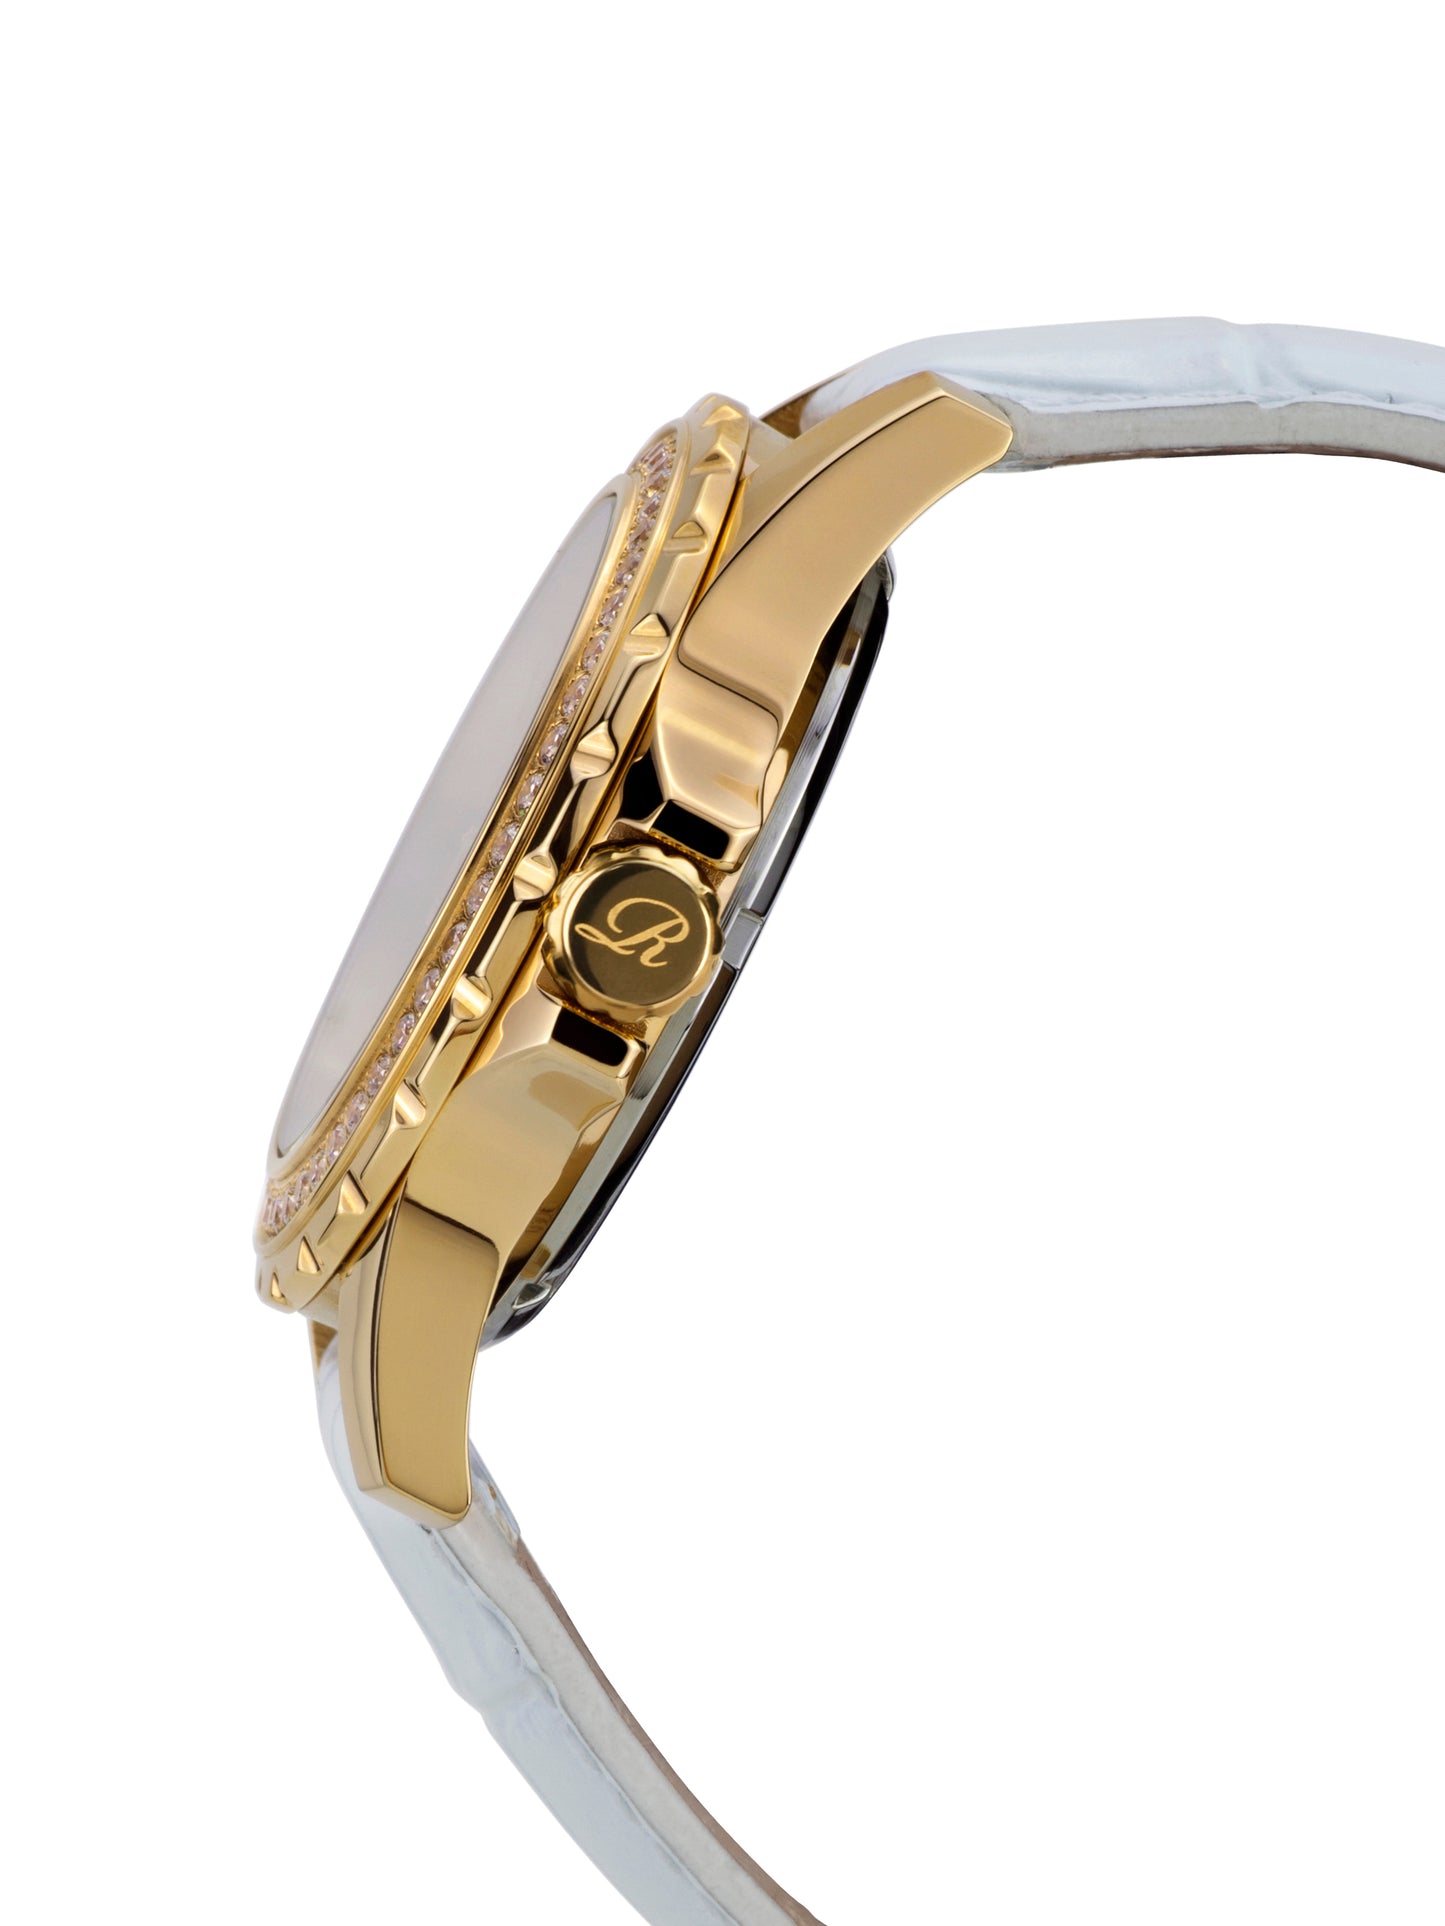 Automatic watches — Romantica — Richtenburg — gold IP white